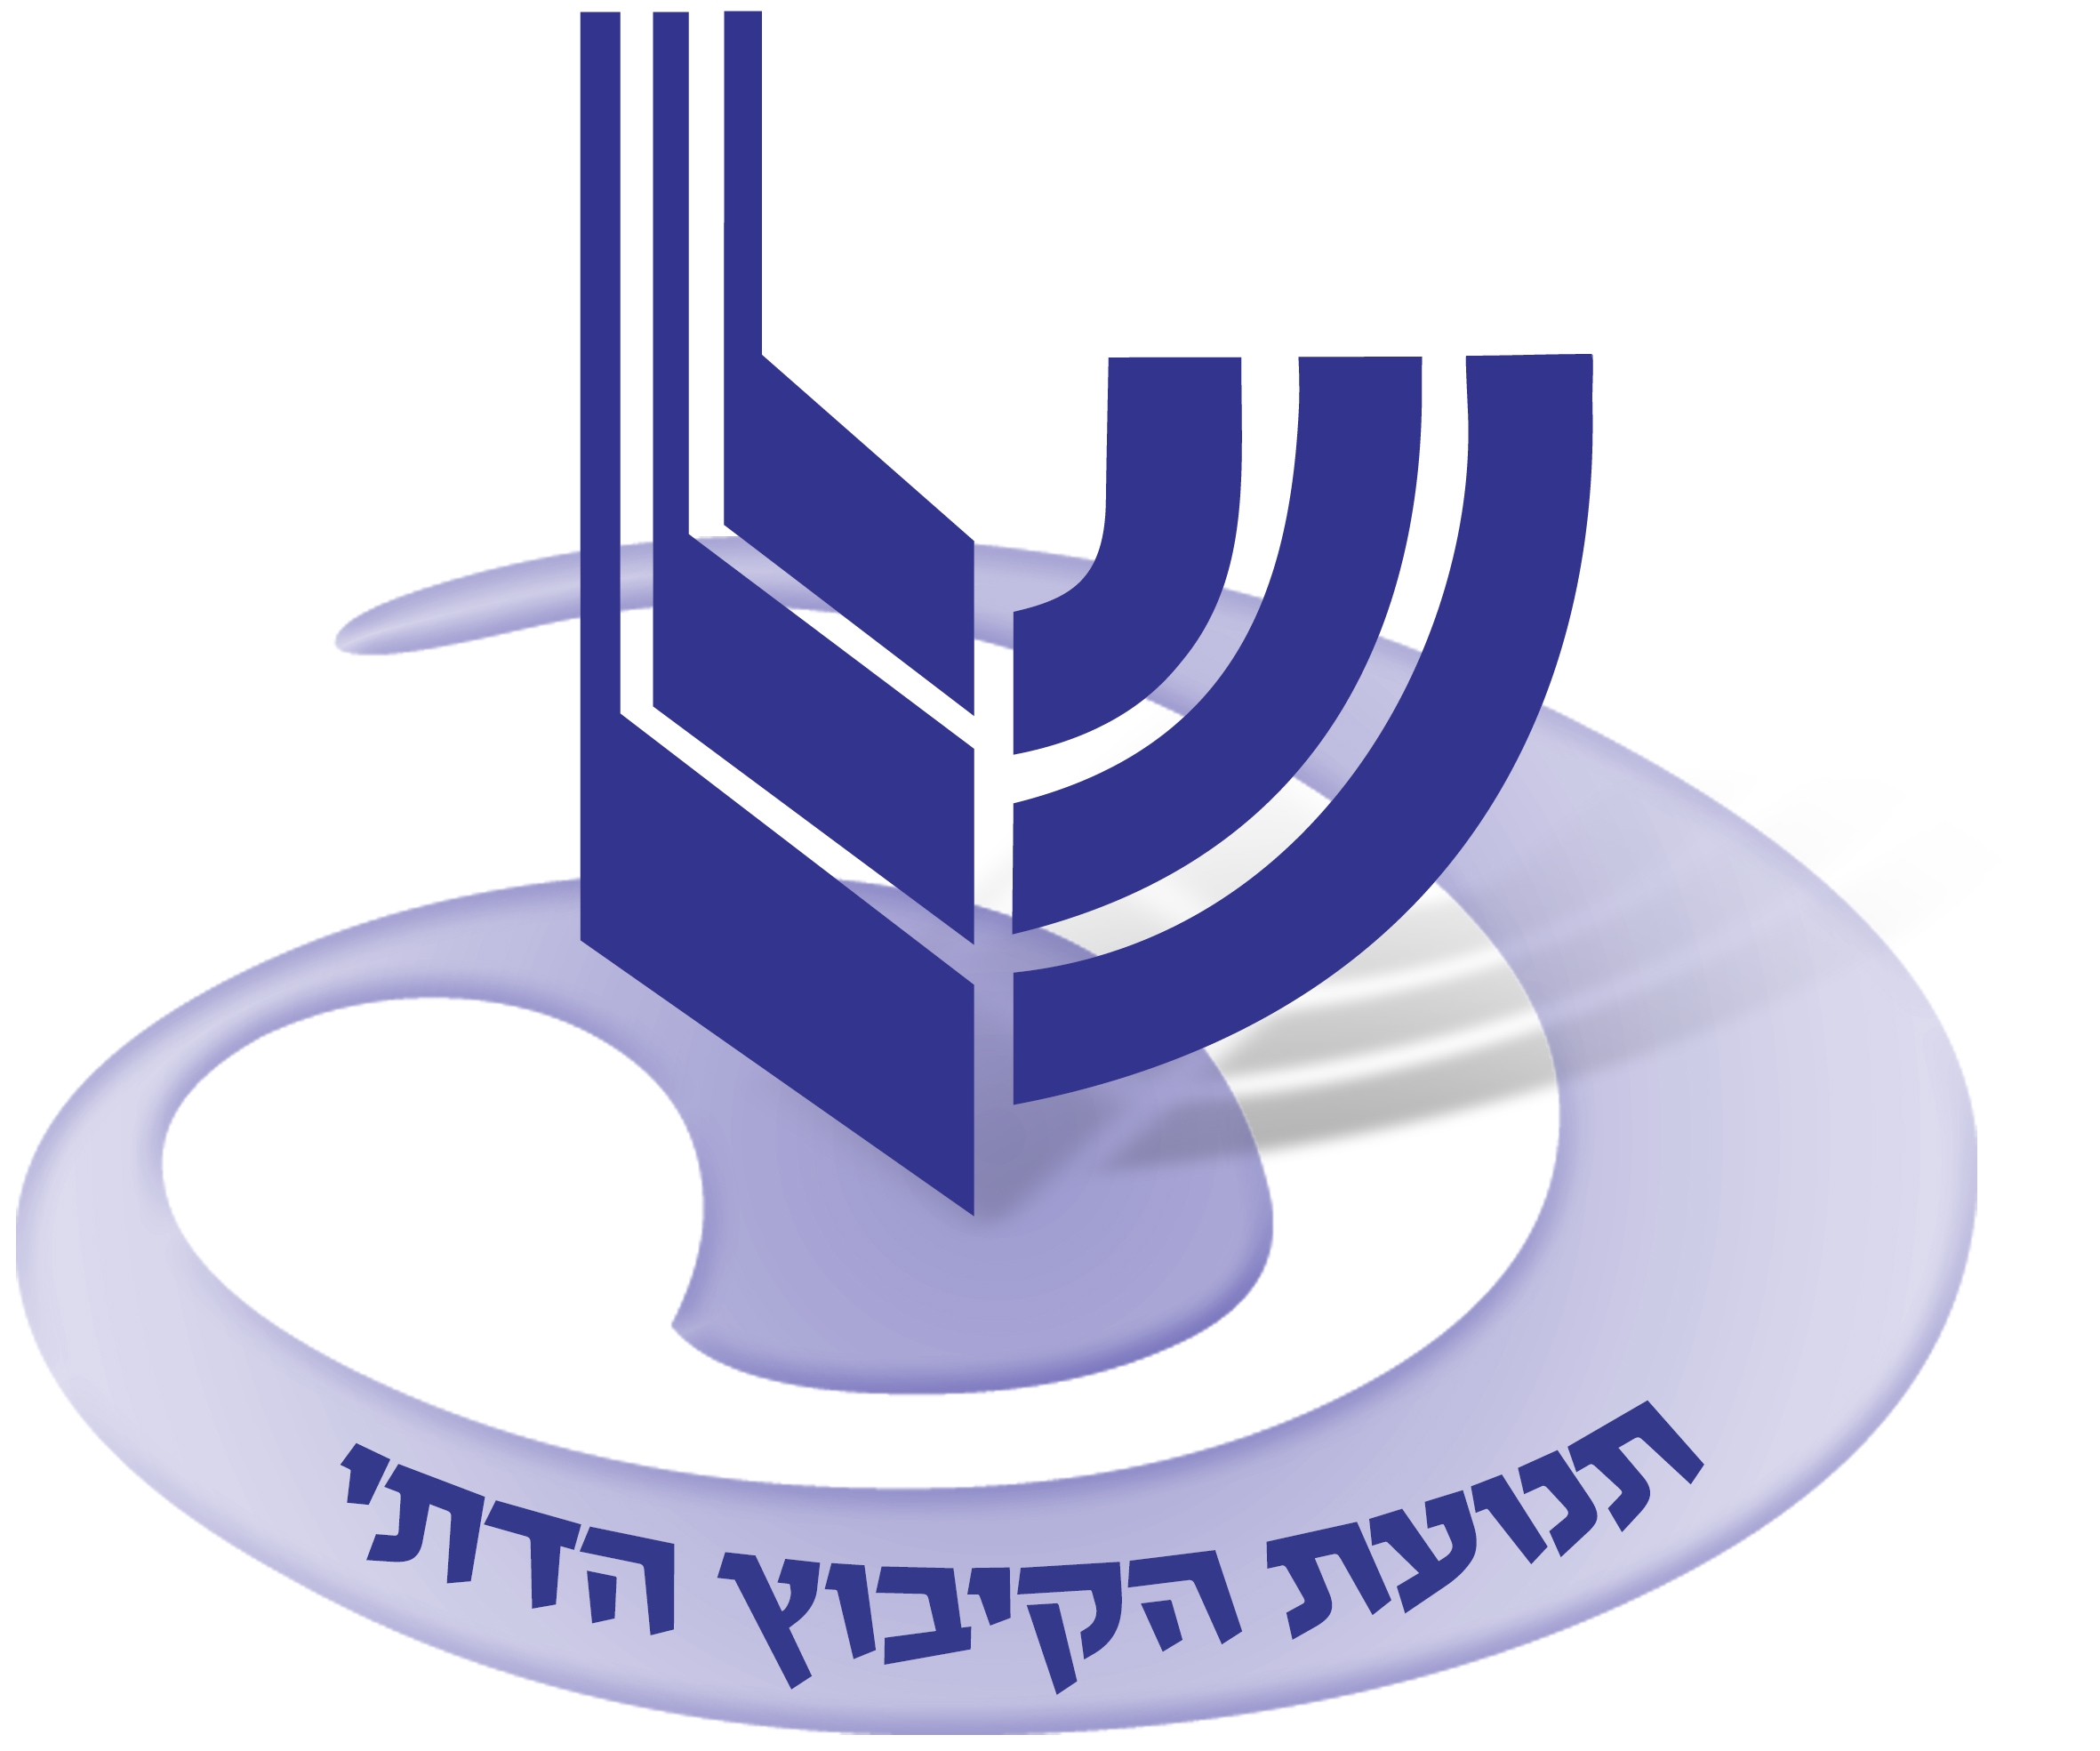 לוגו הקיבוץ הדתי